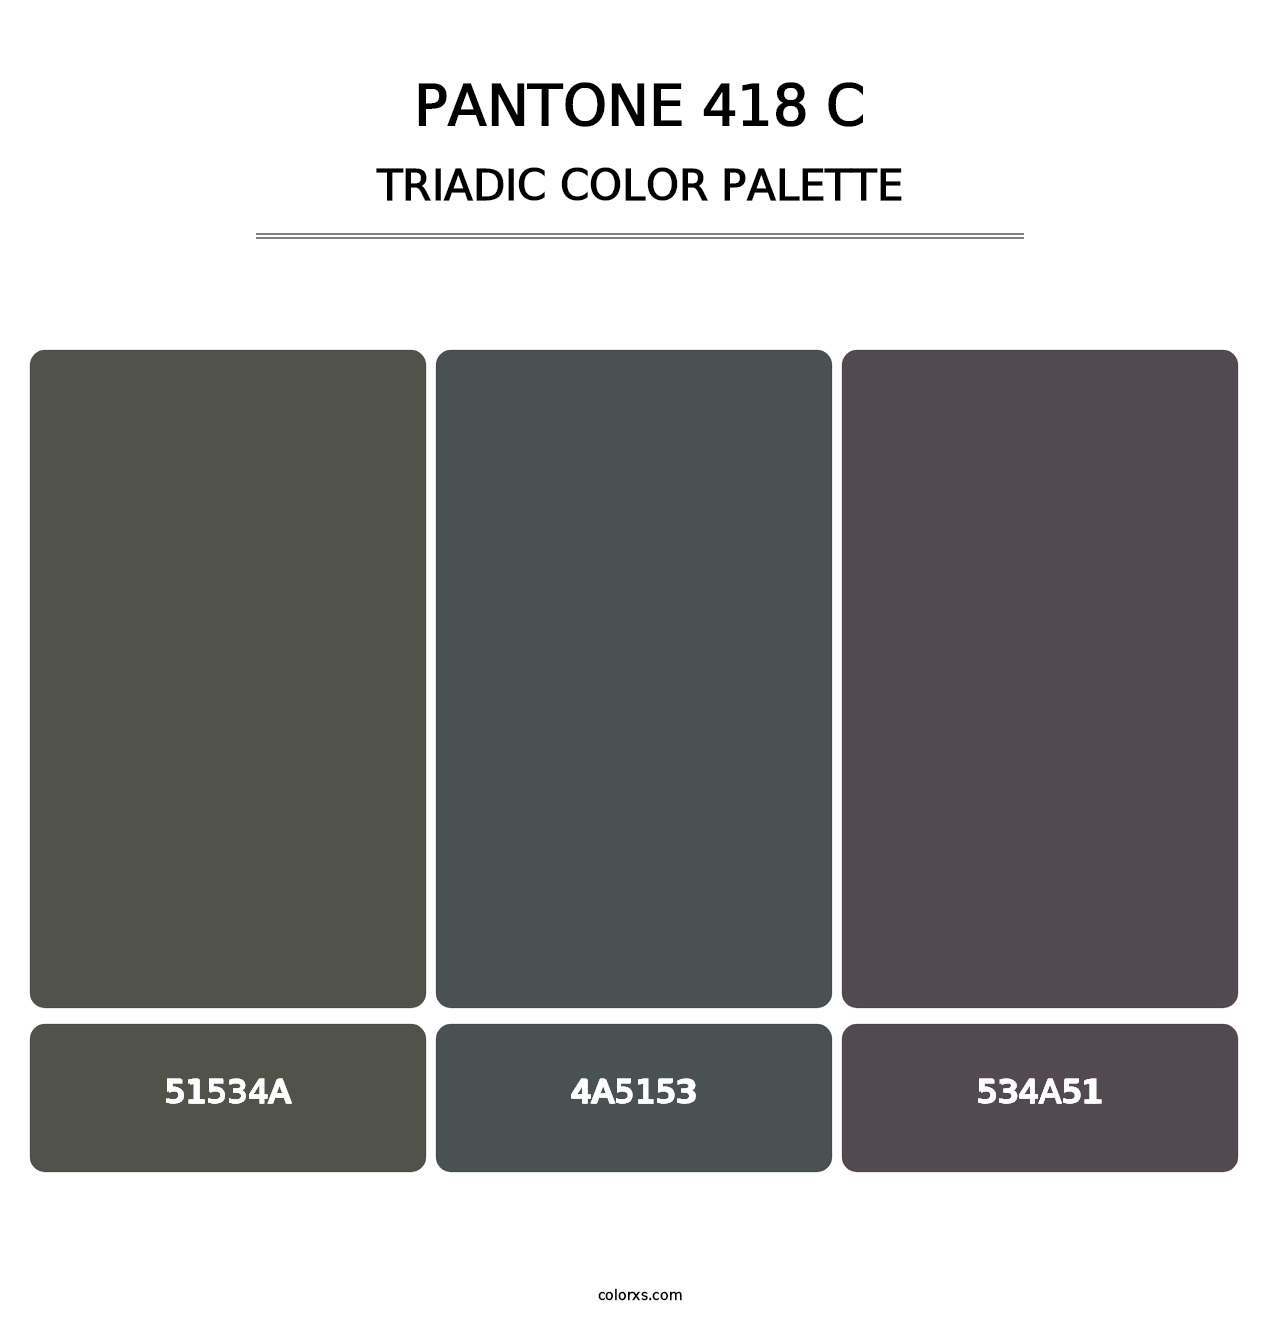 PANTONE 418 C - Triadic Color Palette